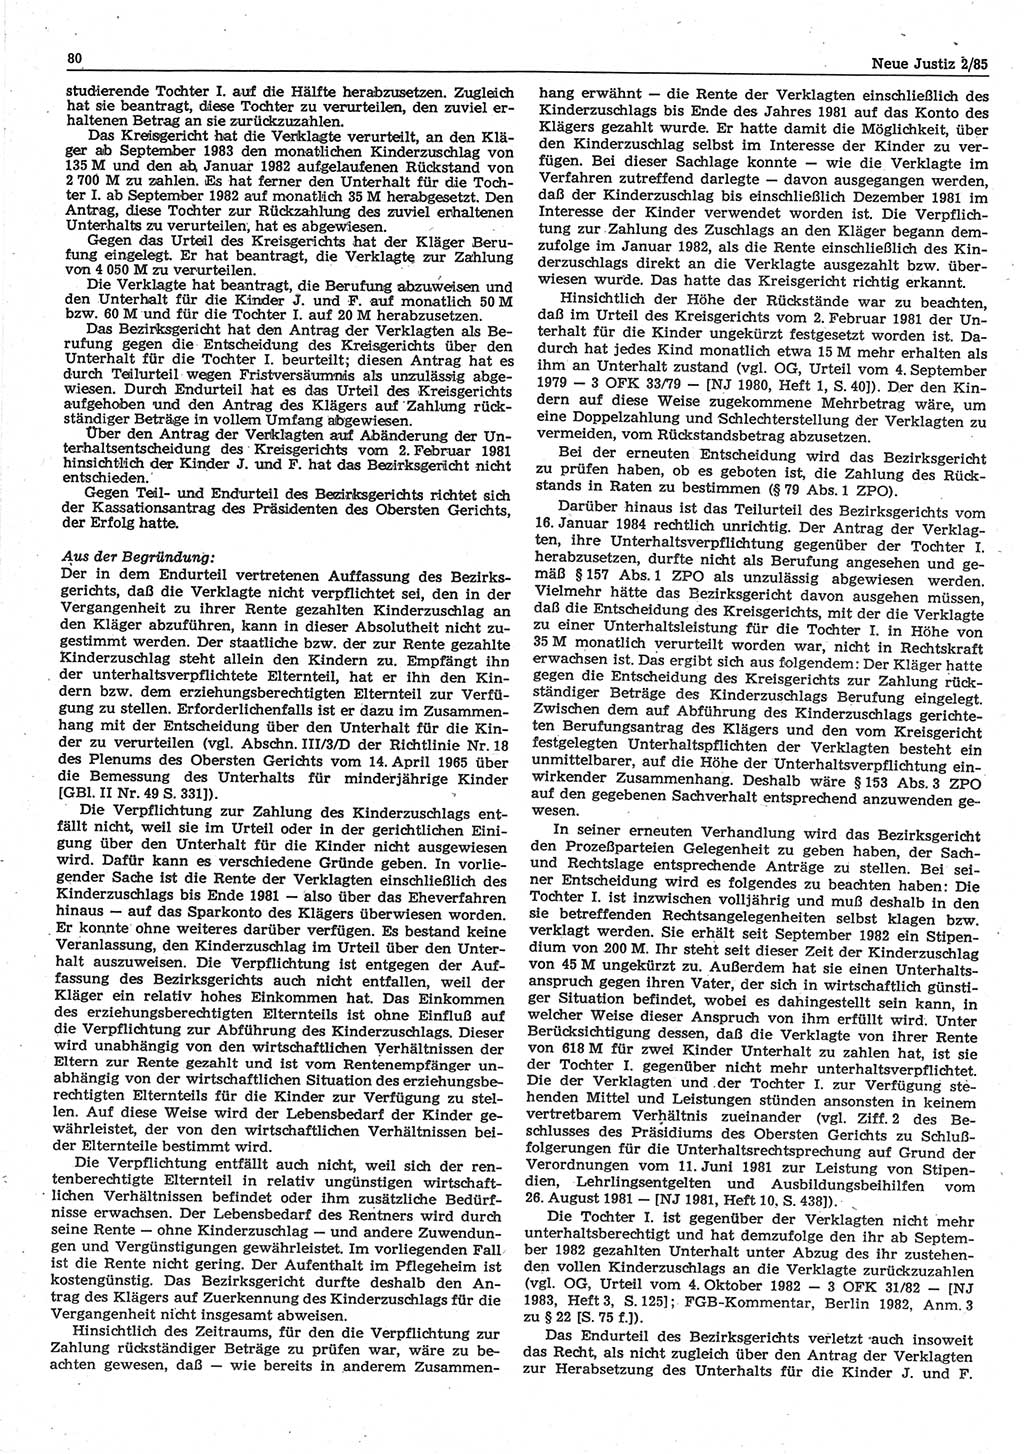 Neue Justiz (NJ), Zeitschrift für sozialistisches Recht und Gesetzlichkeit [Deutsche Demokratische Republik (DDR)], 39. Jahrgang 1985, Seite 80 (NJ DDR 1985, S. 80)